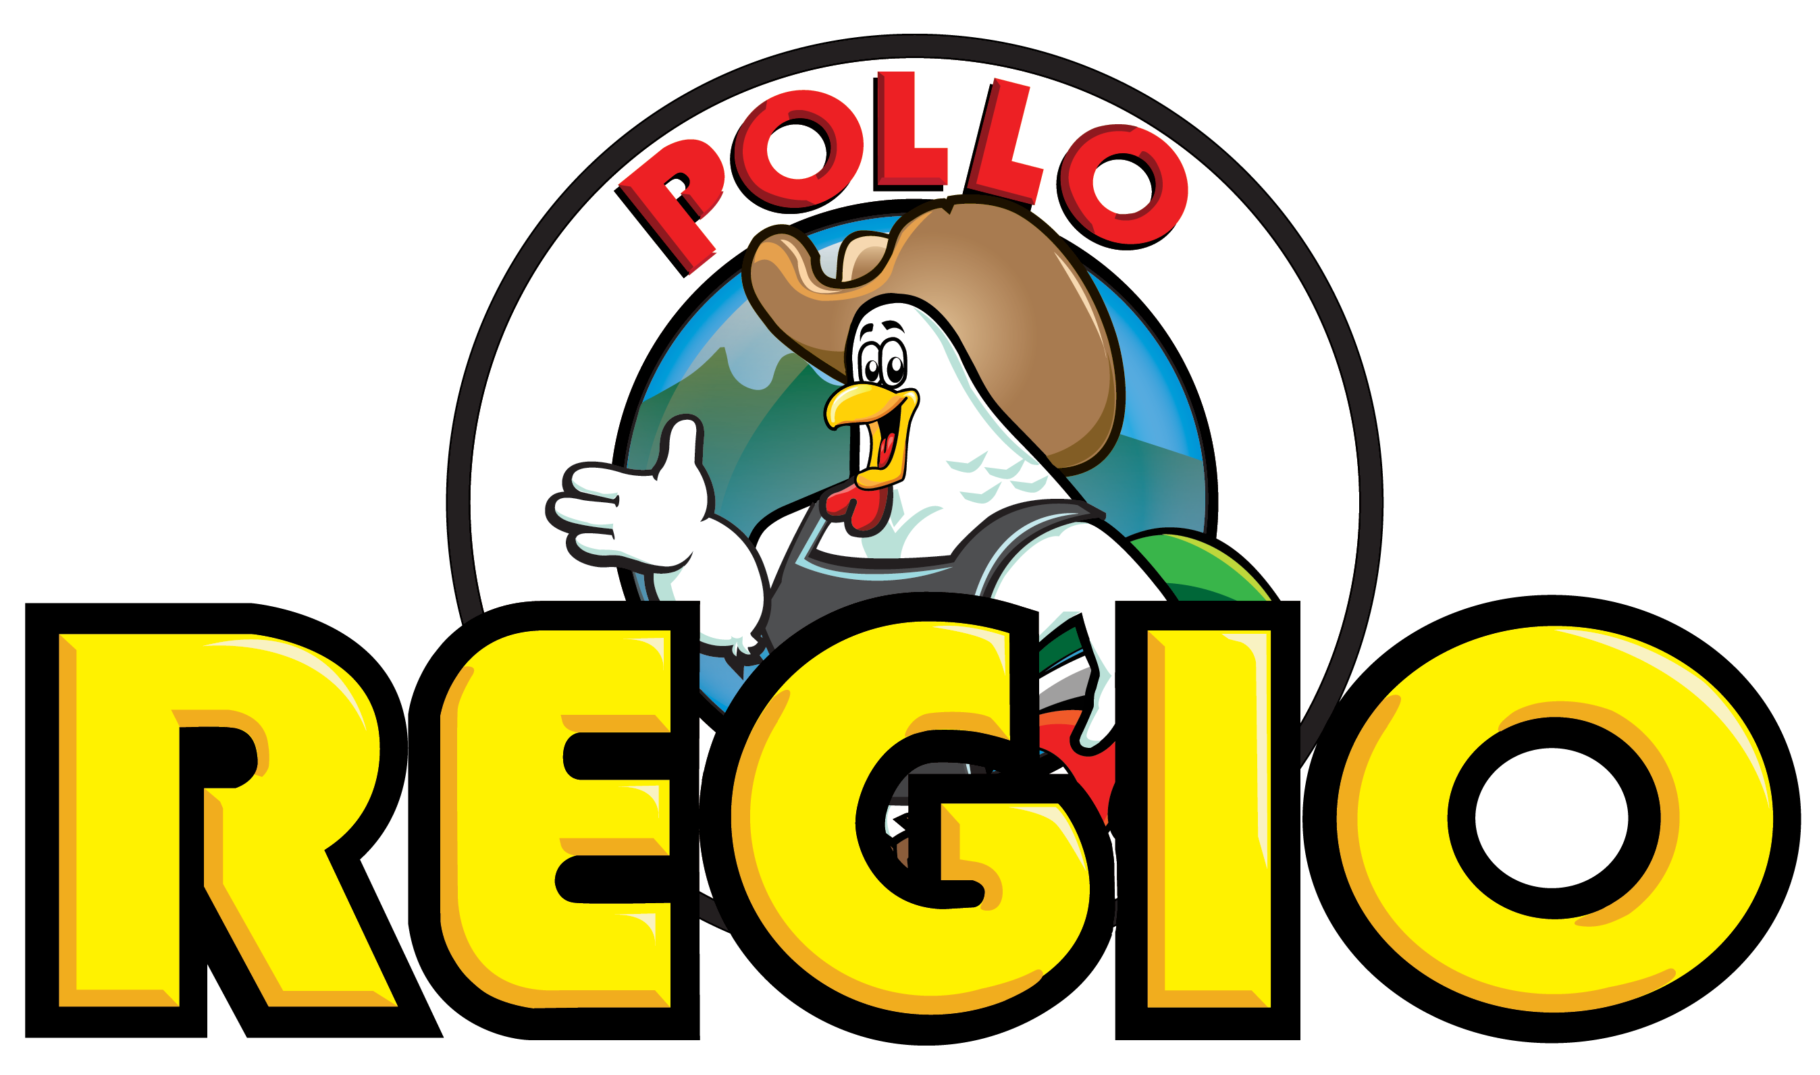 Pollo Regio